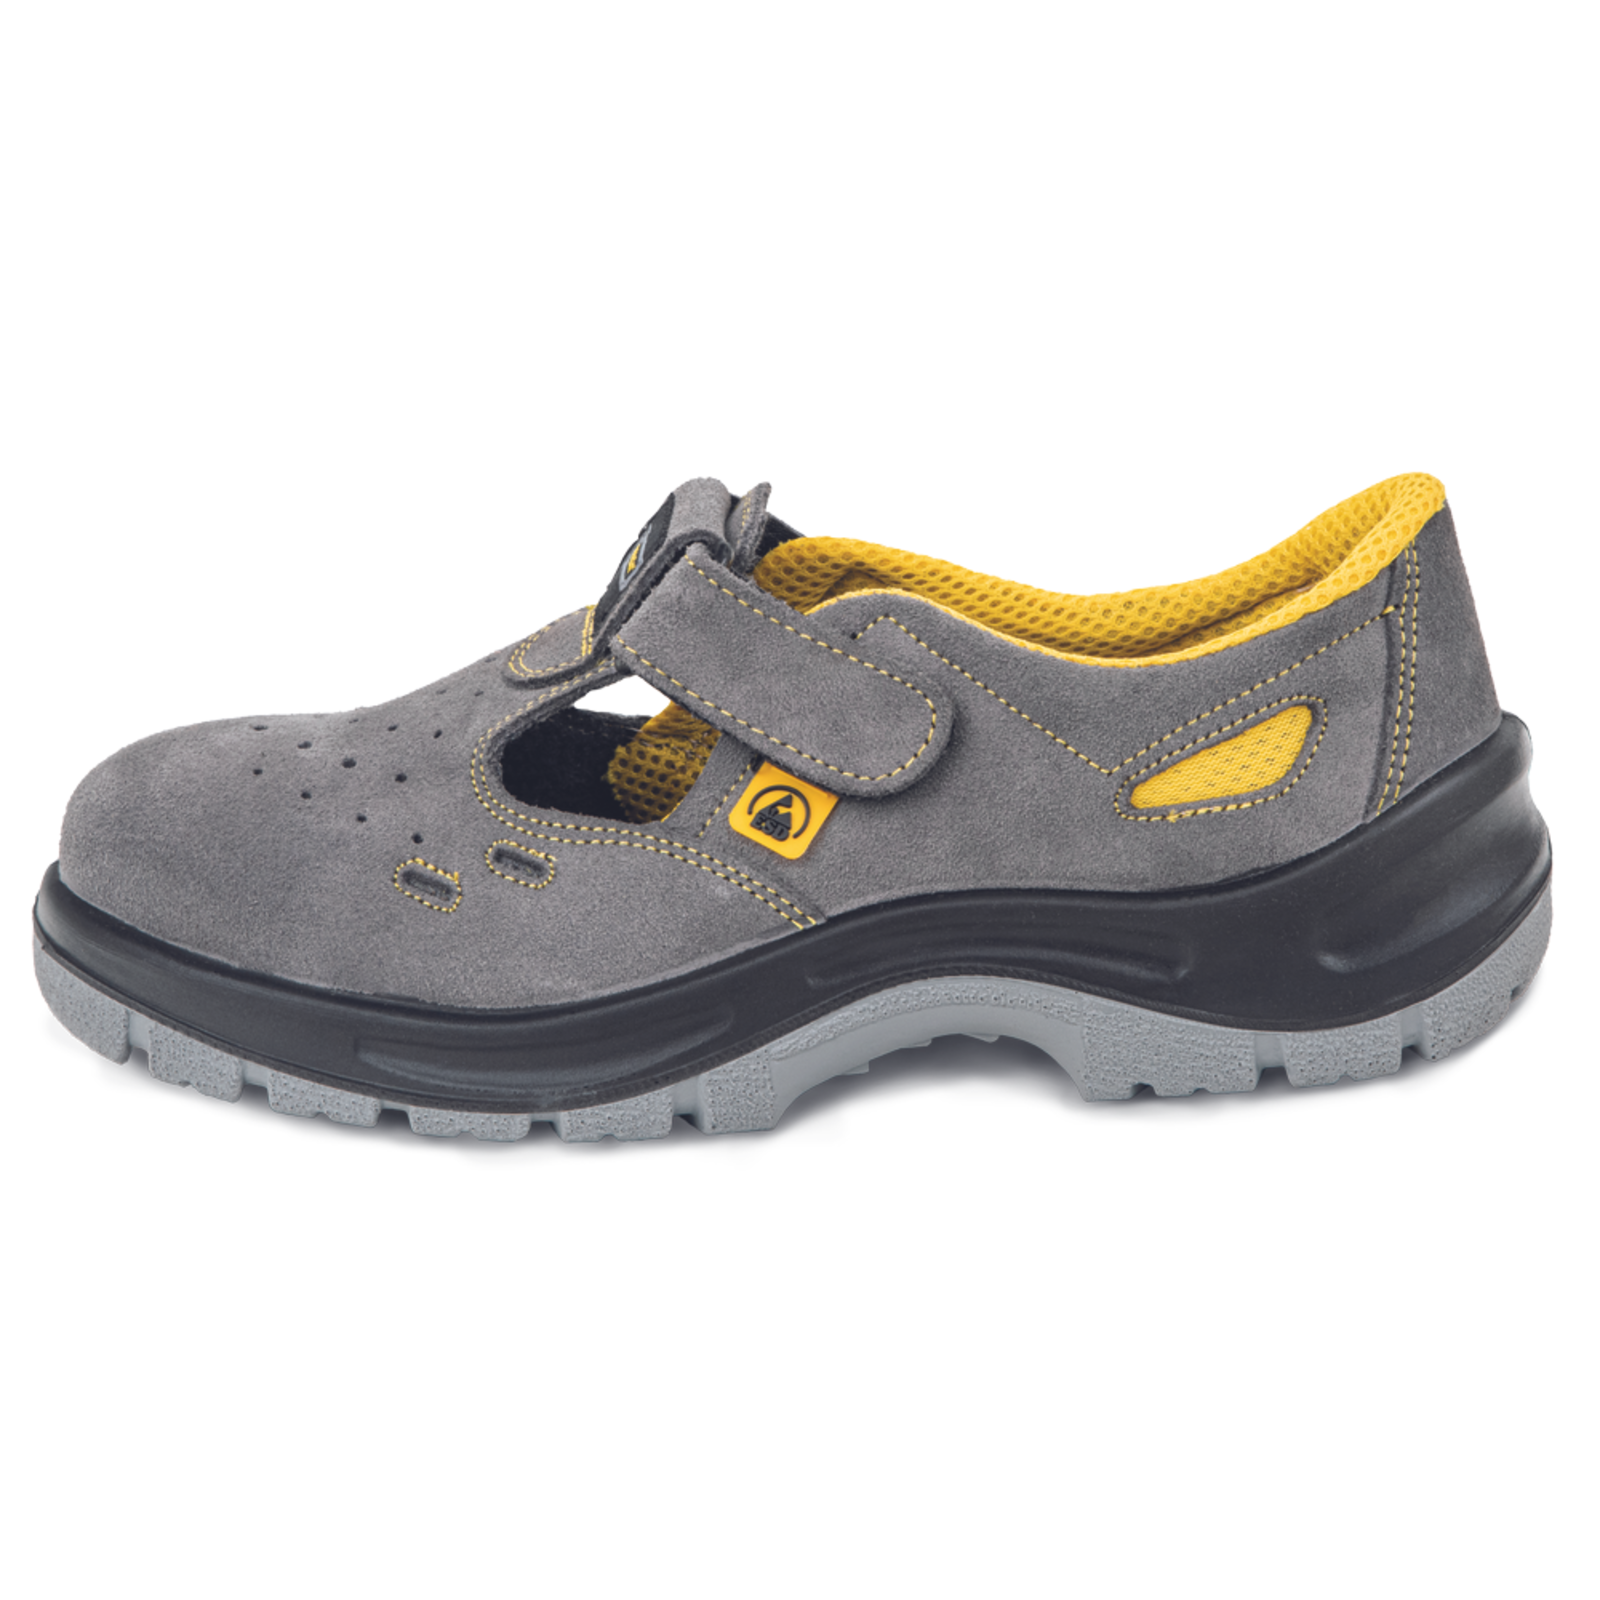 Pracovné bezpečnostné sandále Panda Selma MF ESD S1P SRC - veľkosť: 37, farba: sivá/žltá